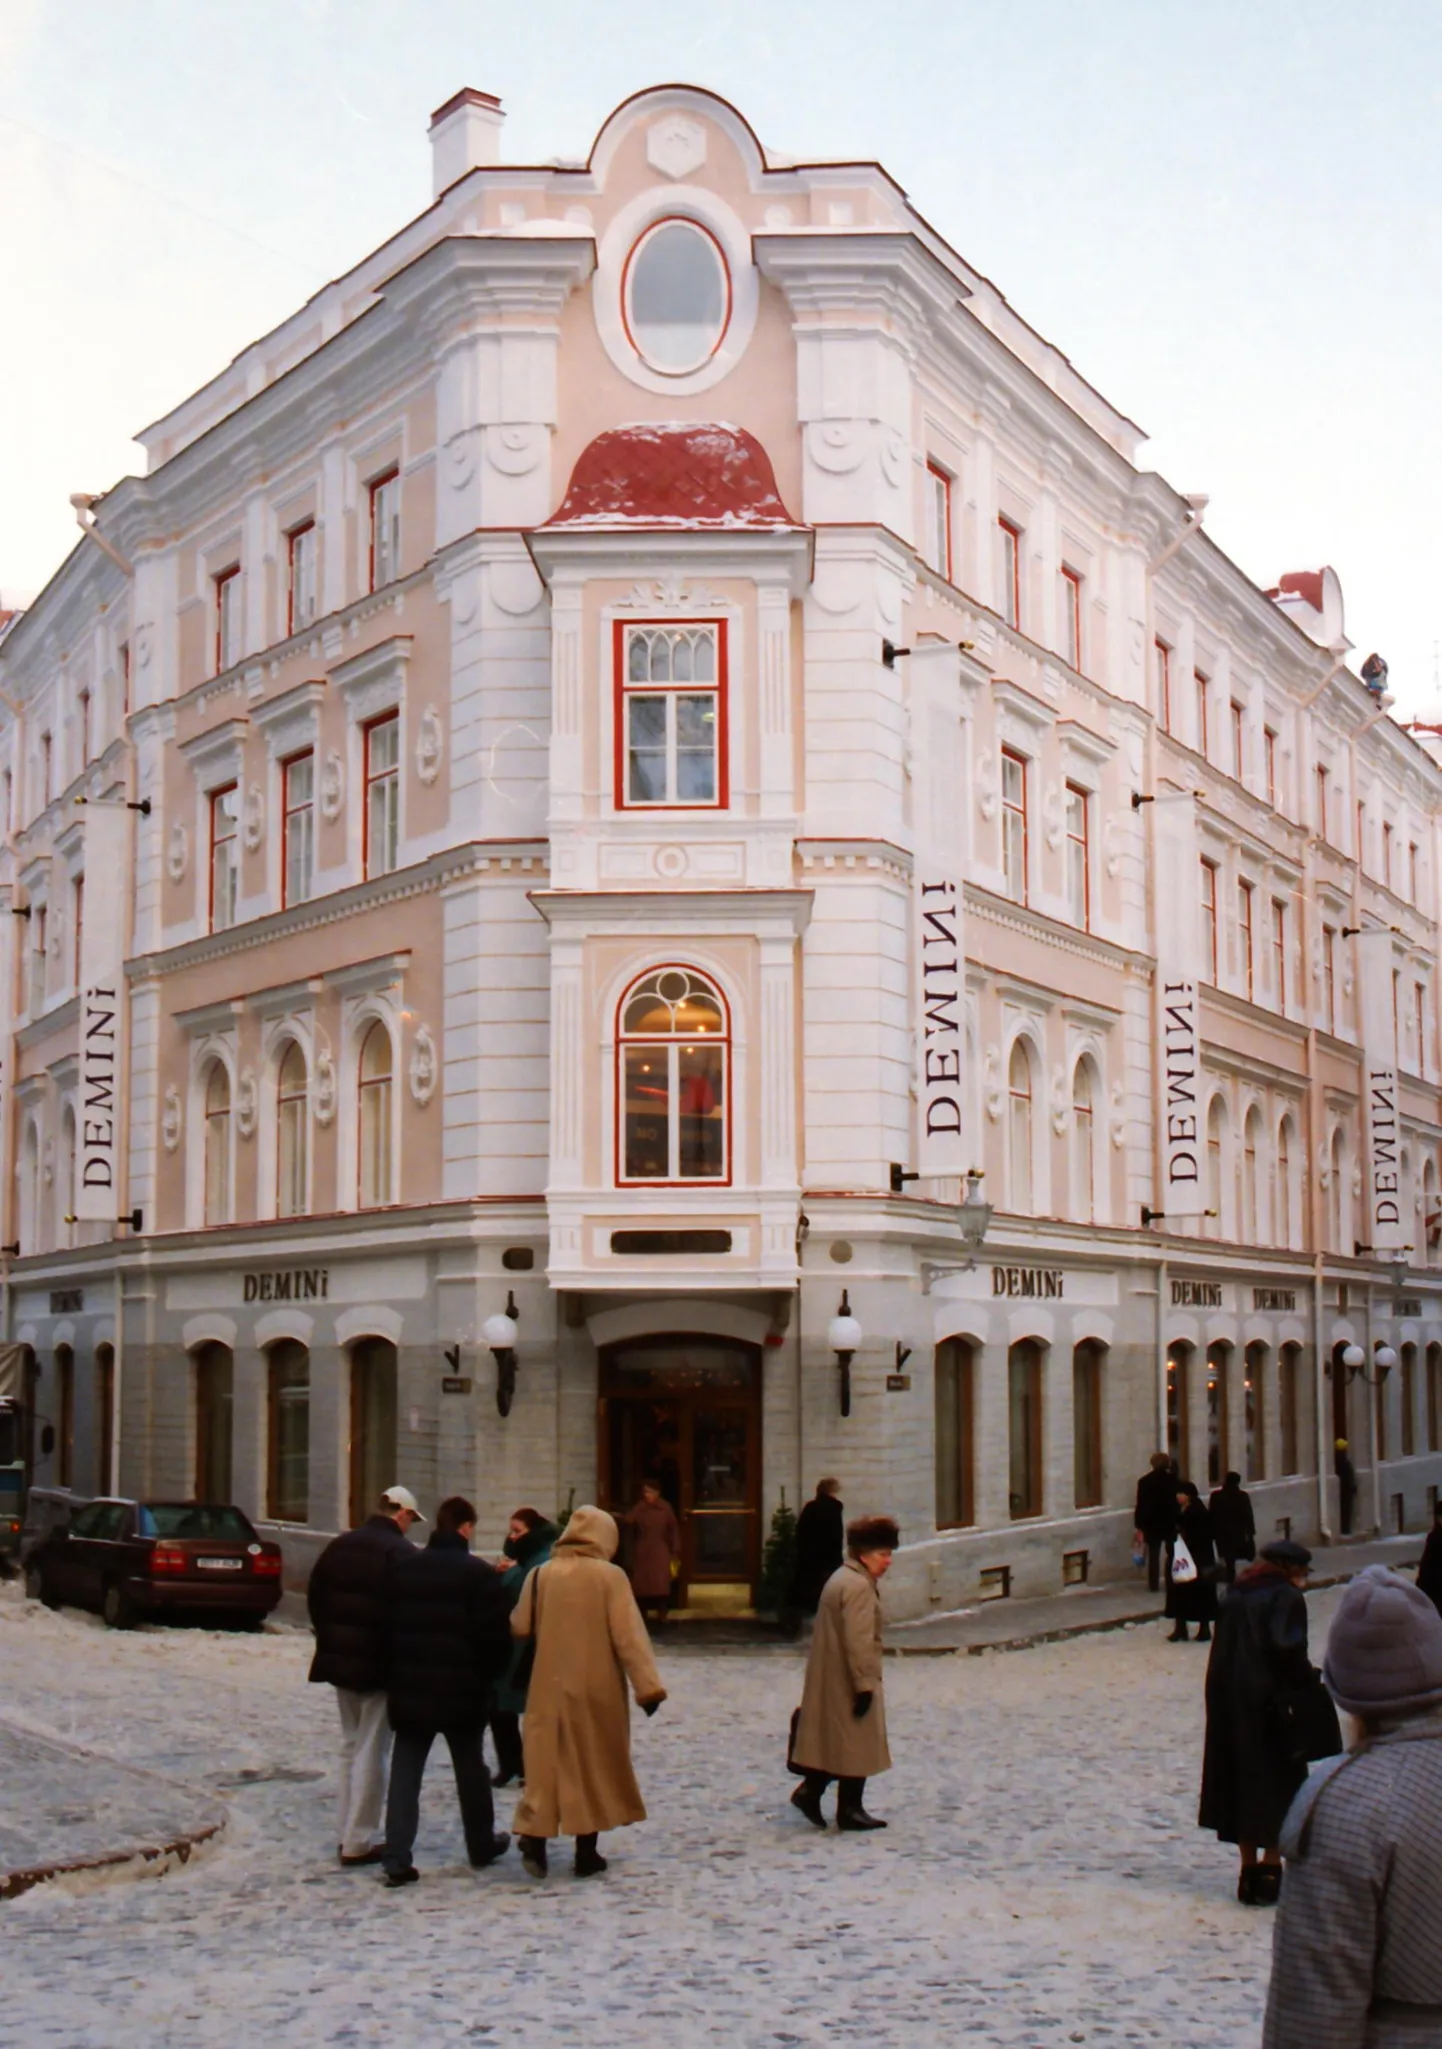 1998. Demini kaubamaja Tallinnas.